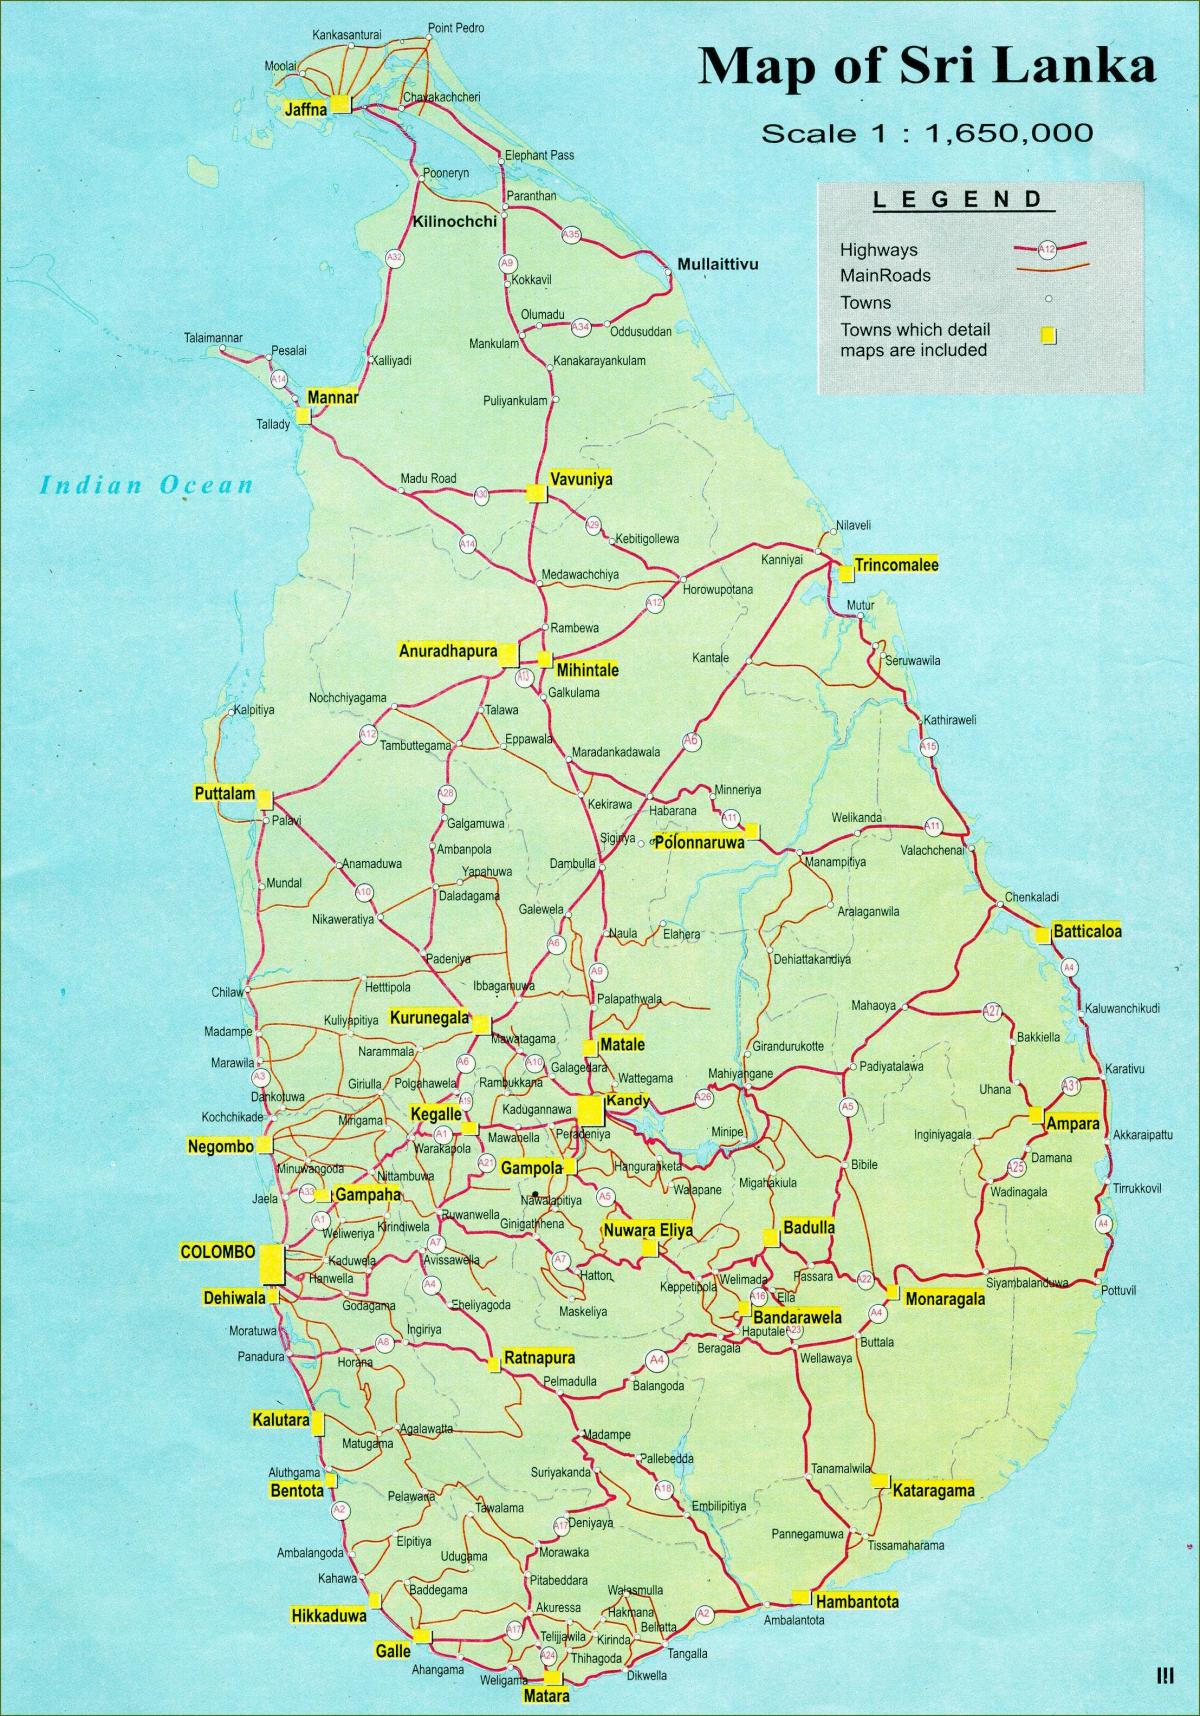 карта Шри Ланке на мапи са растојањем